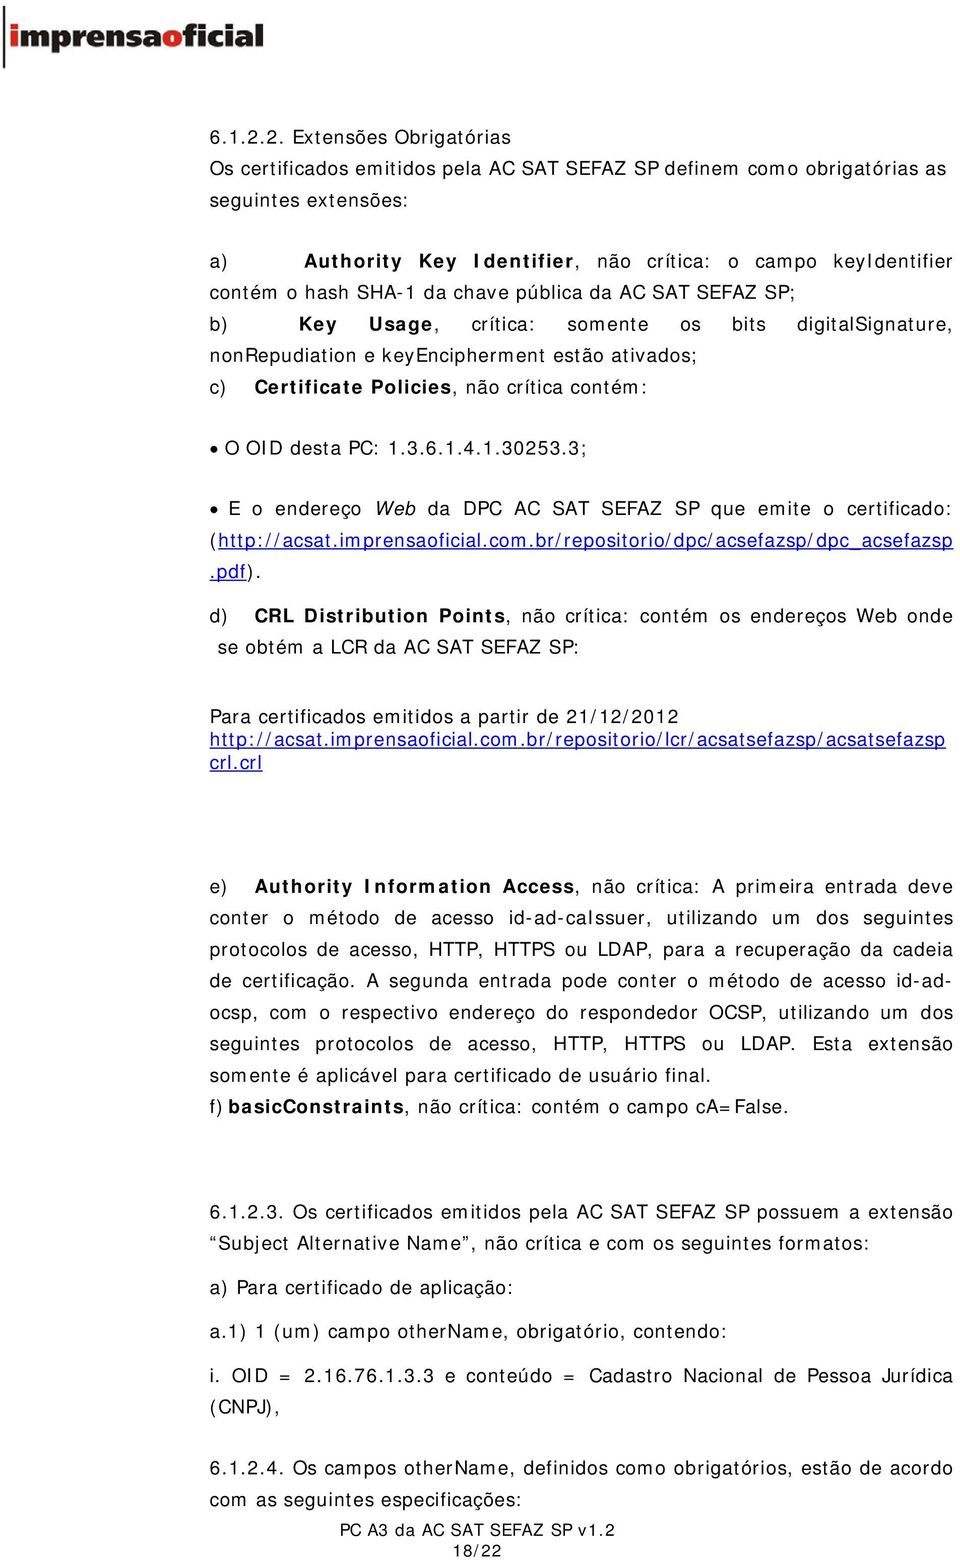 SHA-1 da chave pública da AC SAT SEFAZ SP; b) Key Usage, crítica: somente os bits digitalsignature, nonrepudiation e keyencipherment estão ativados; c) Certificate Policies, não crítica contém: O OID